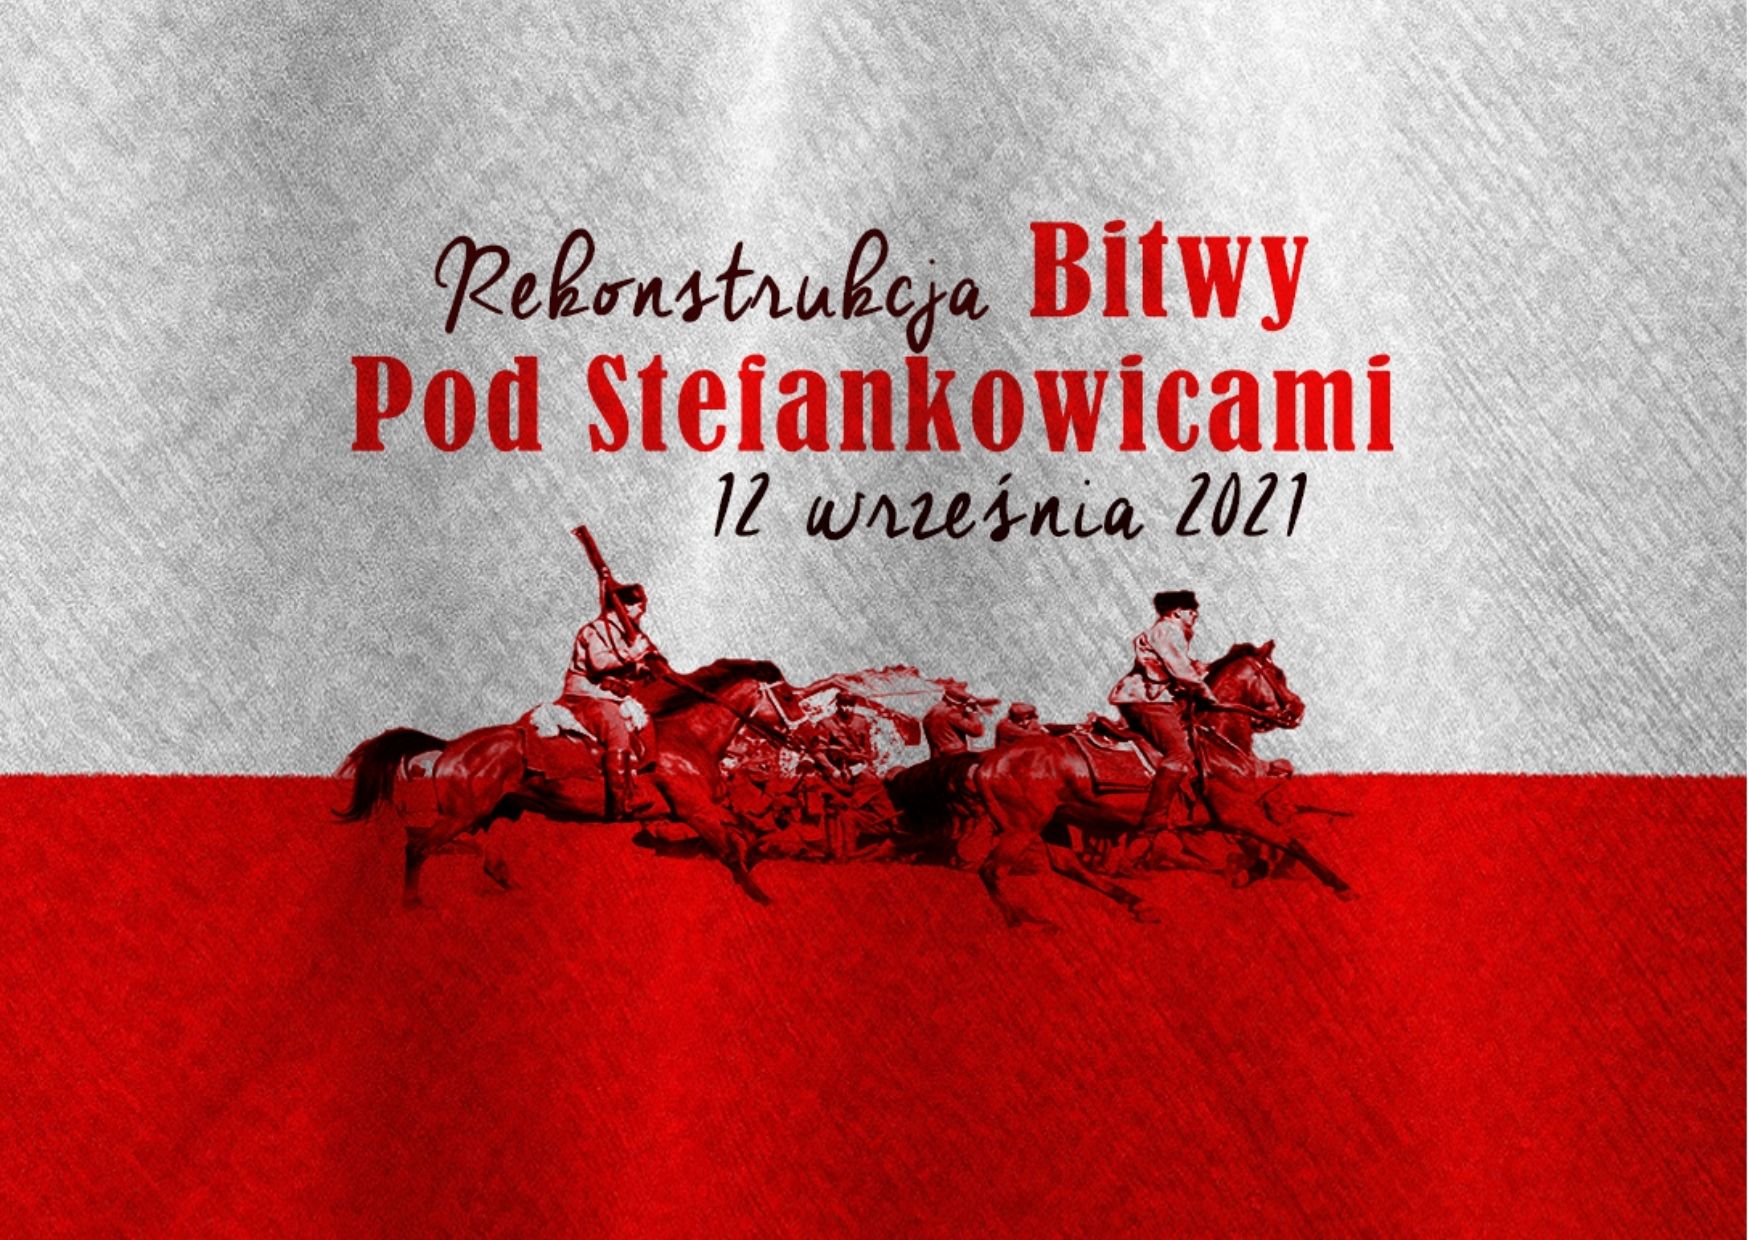 Grafika przedstawia na biało czerwonym tle ludzi na koniach oraz napis: Rekonstrukcja Bitwy pod Stefankowicami 12 września 2021